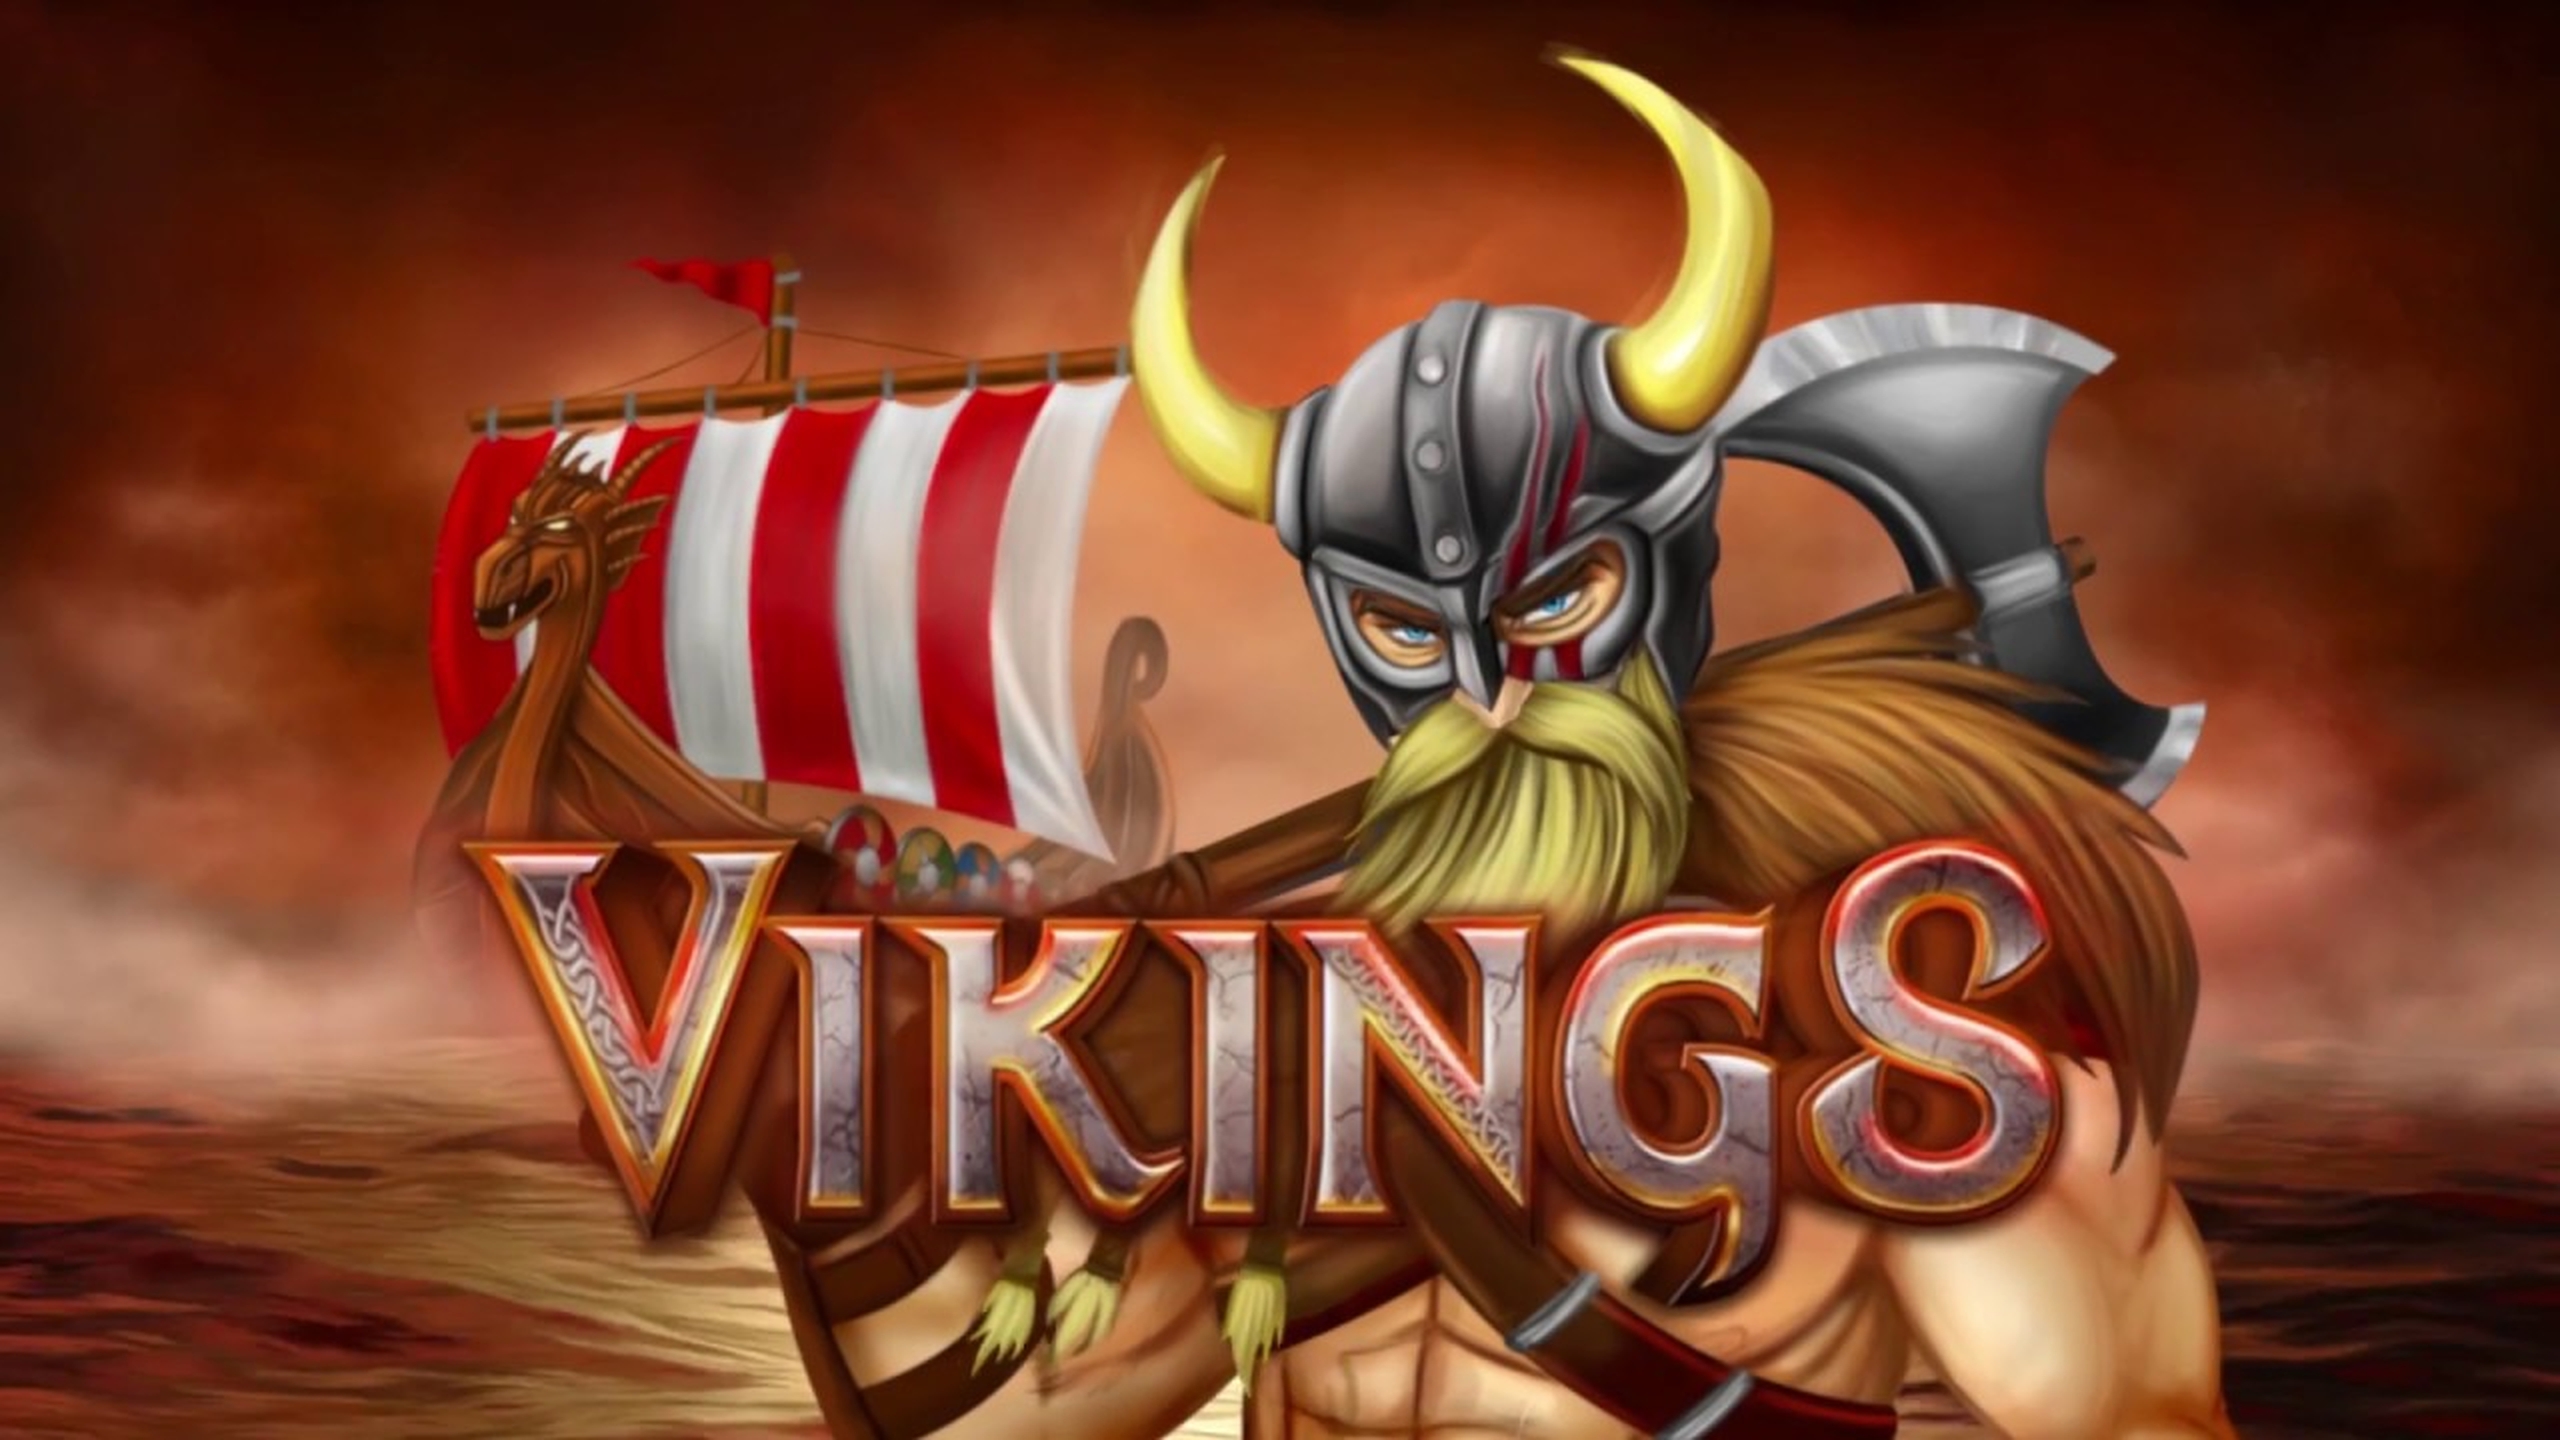 Vikings demo